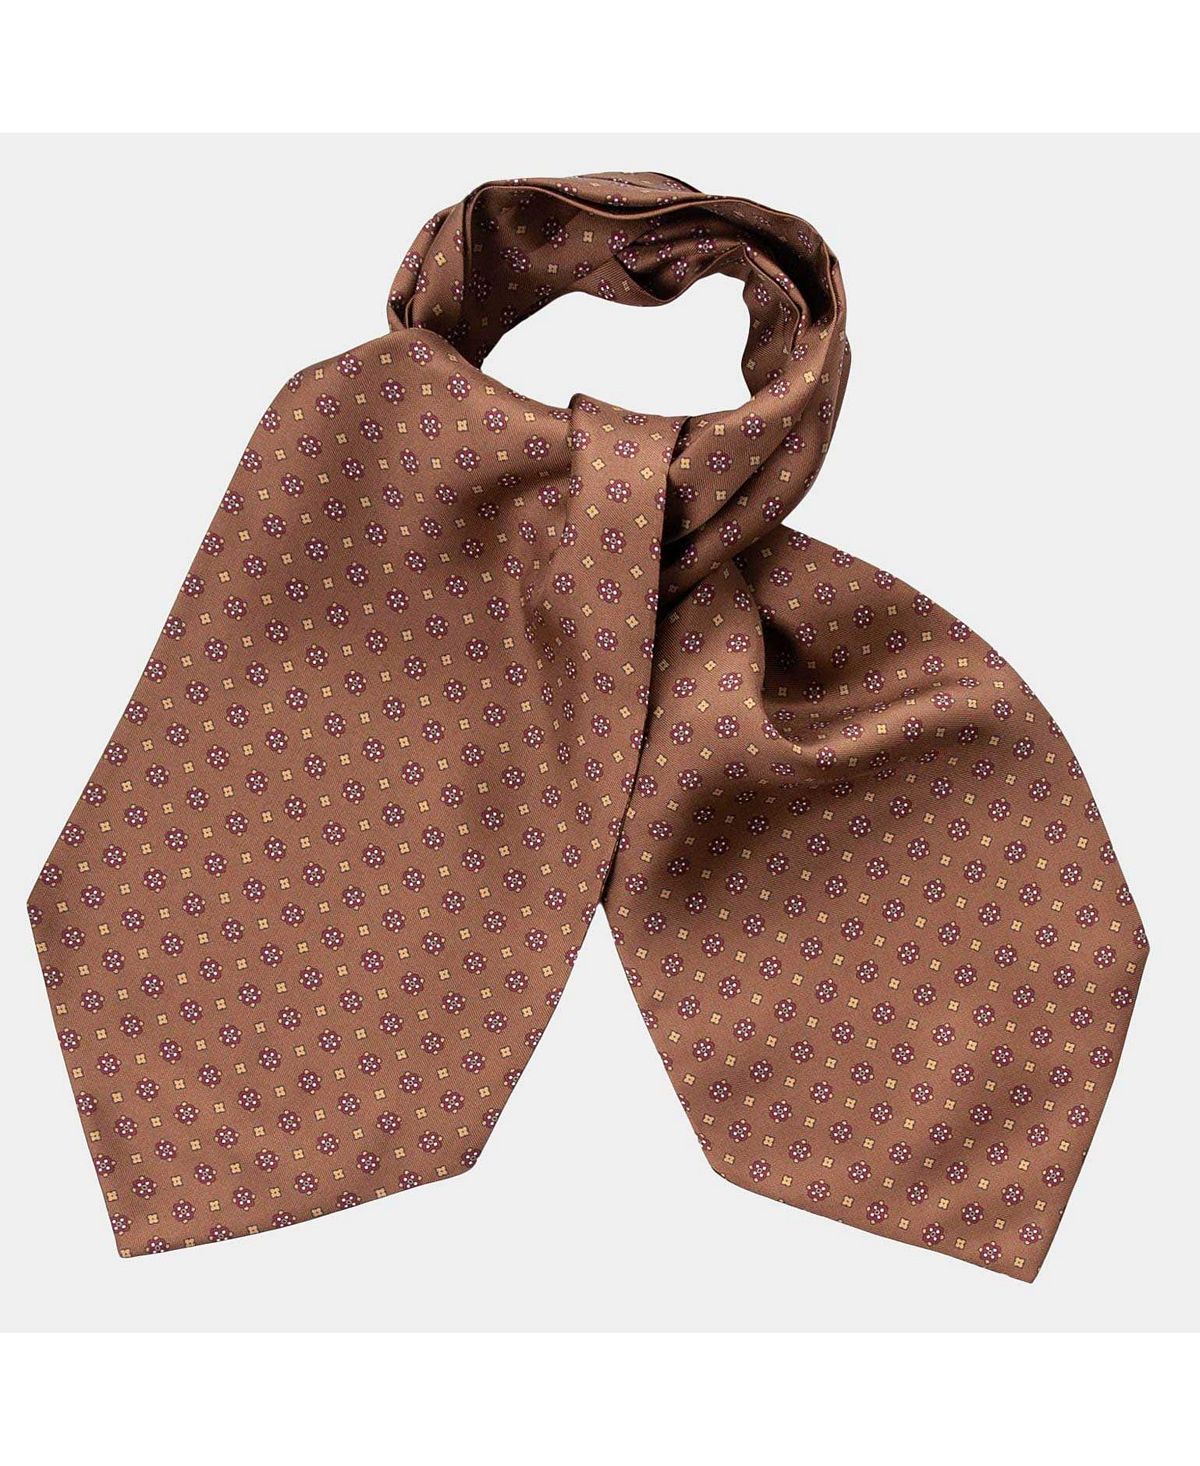 Pagani - Шелковый галстук Ascot для мужчин - Коньяк Elizabetta foresta удлиненный шелковый галстук гренадин для мужчин elizabetta